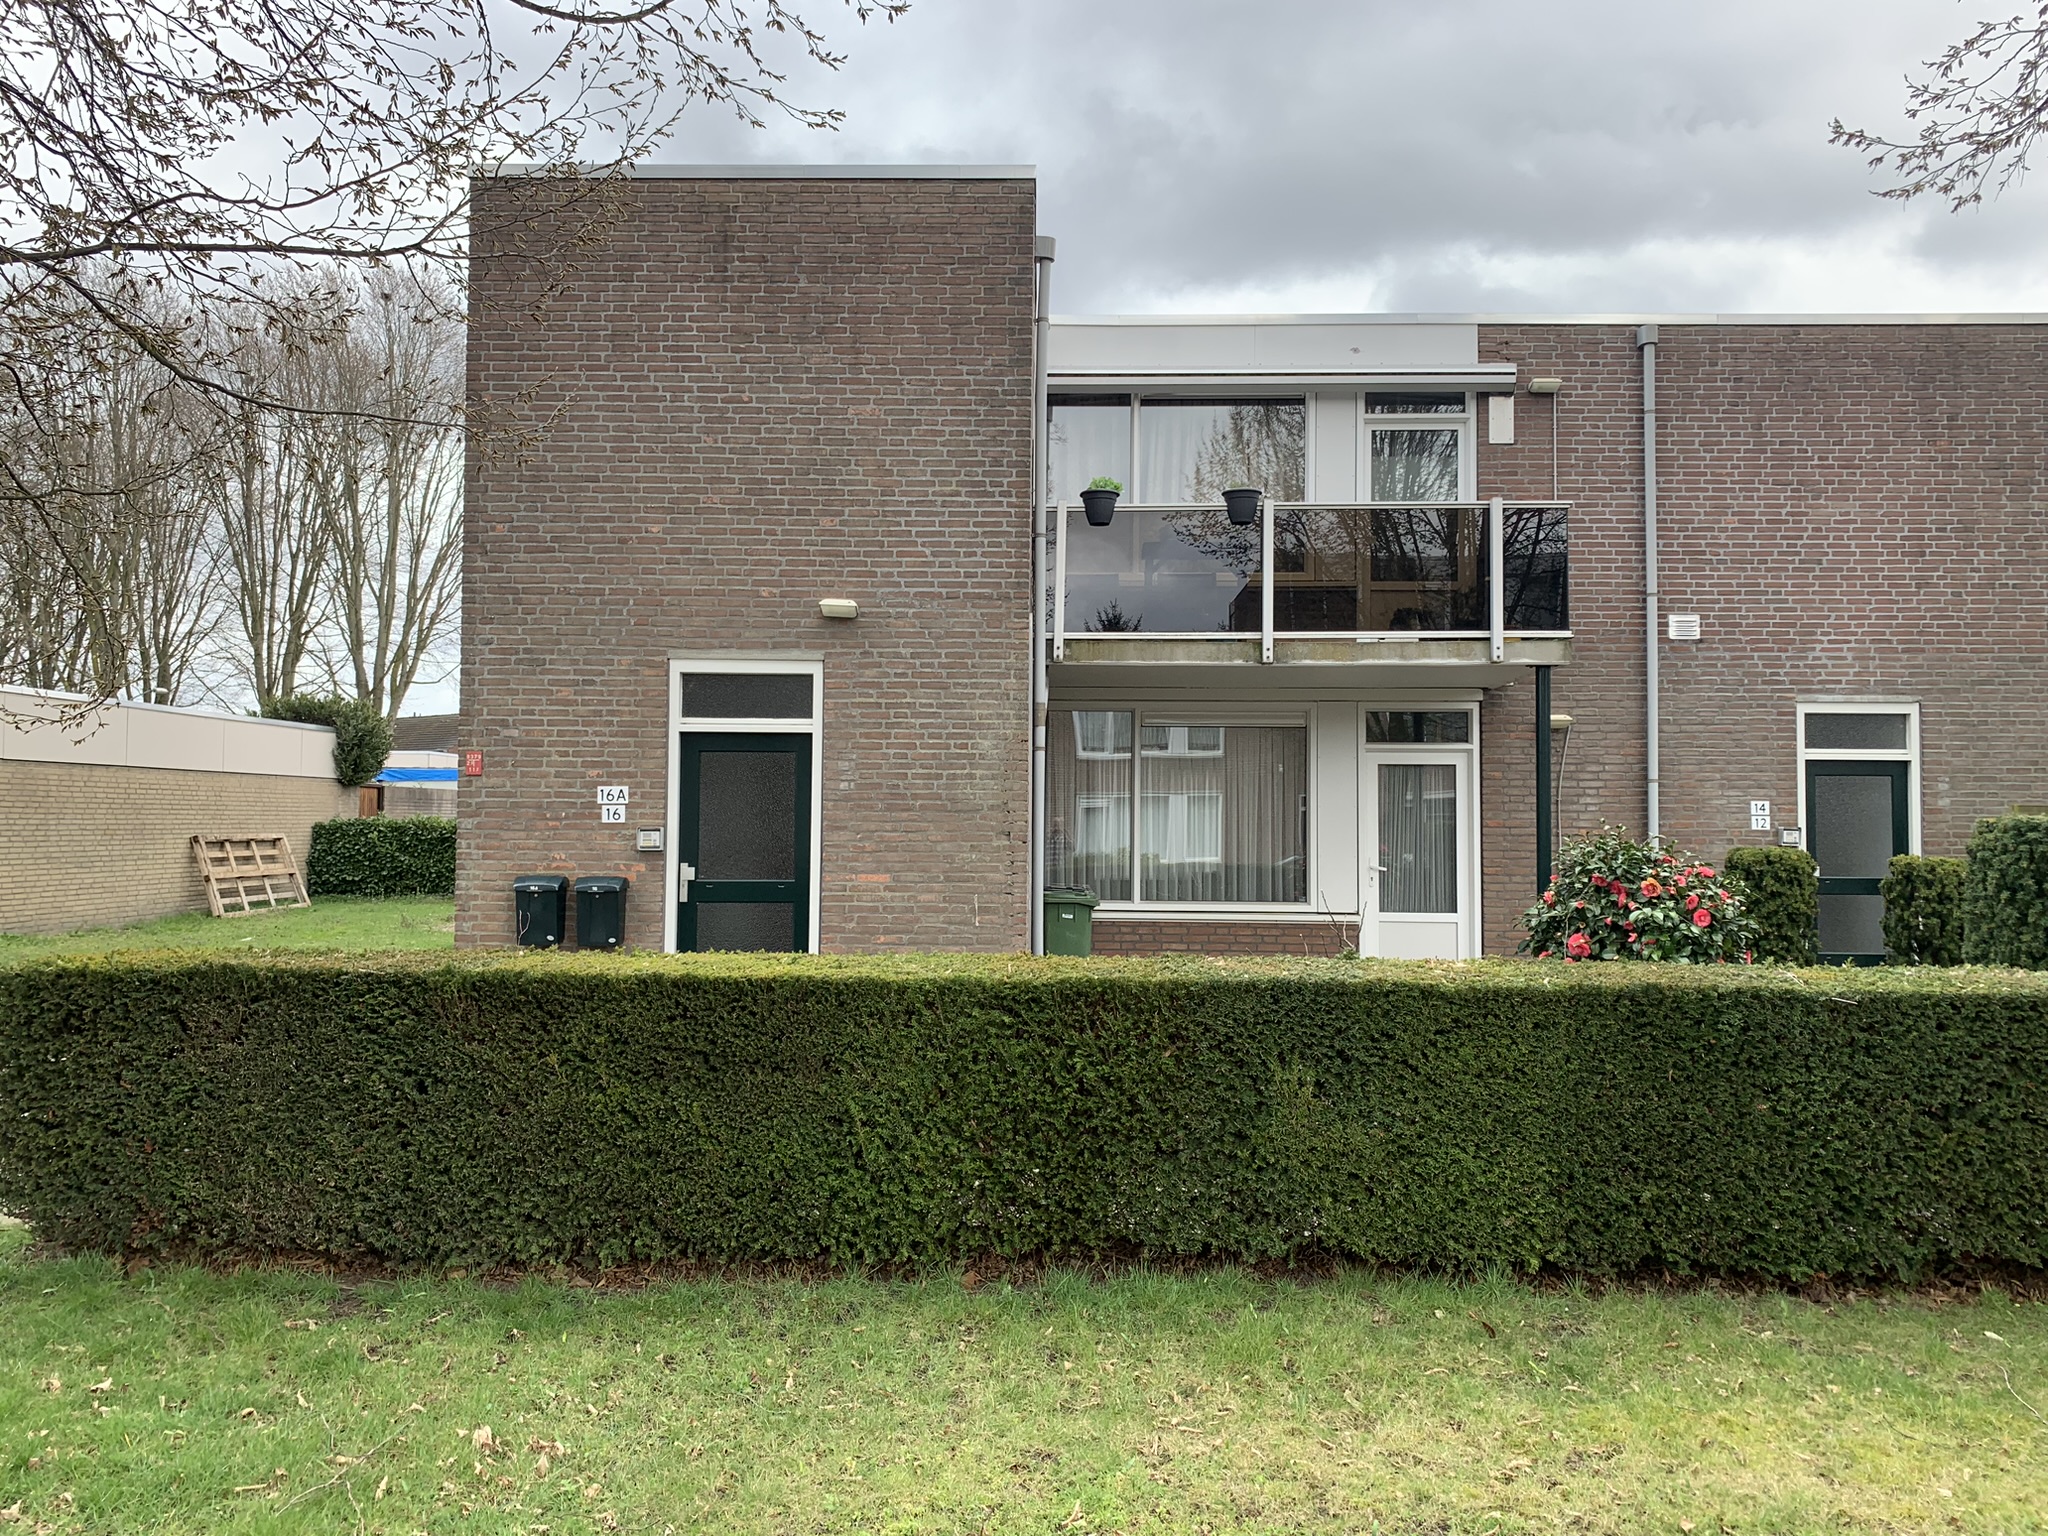 Aldenborghlaan 16, 6021 VV Budel, Nederland